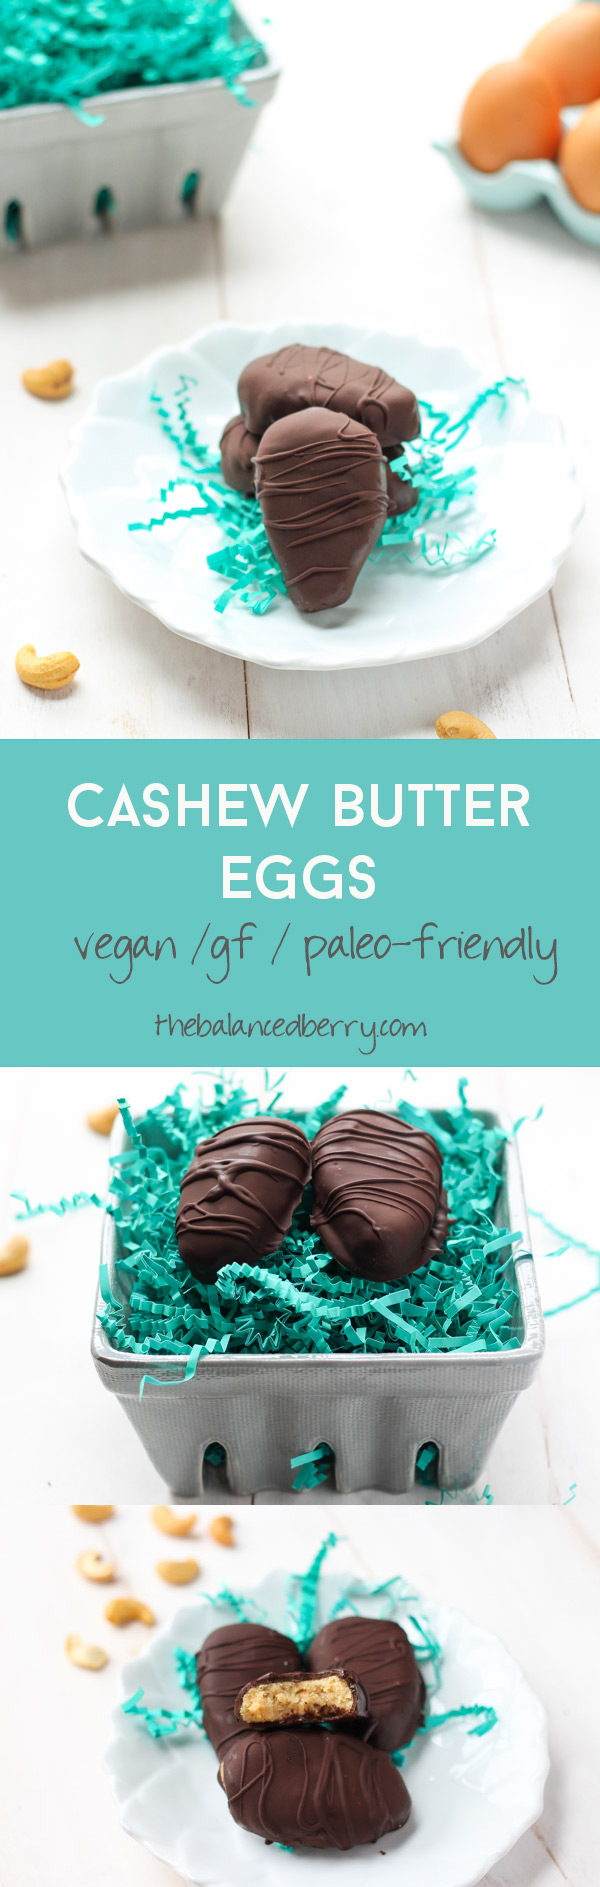 Cashew-coconut butter eggs via thebalancedberry.com 